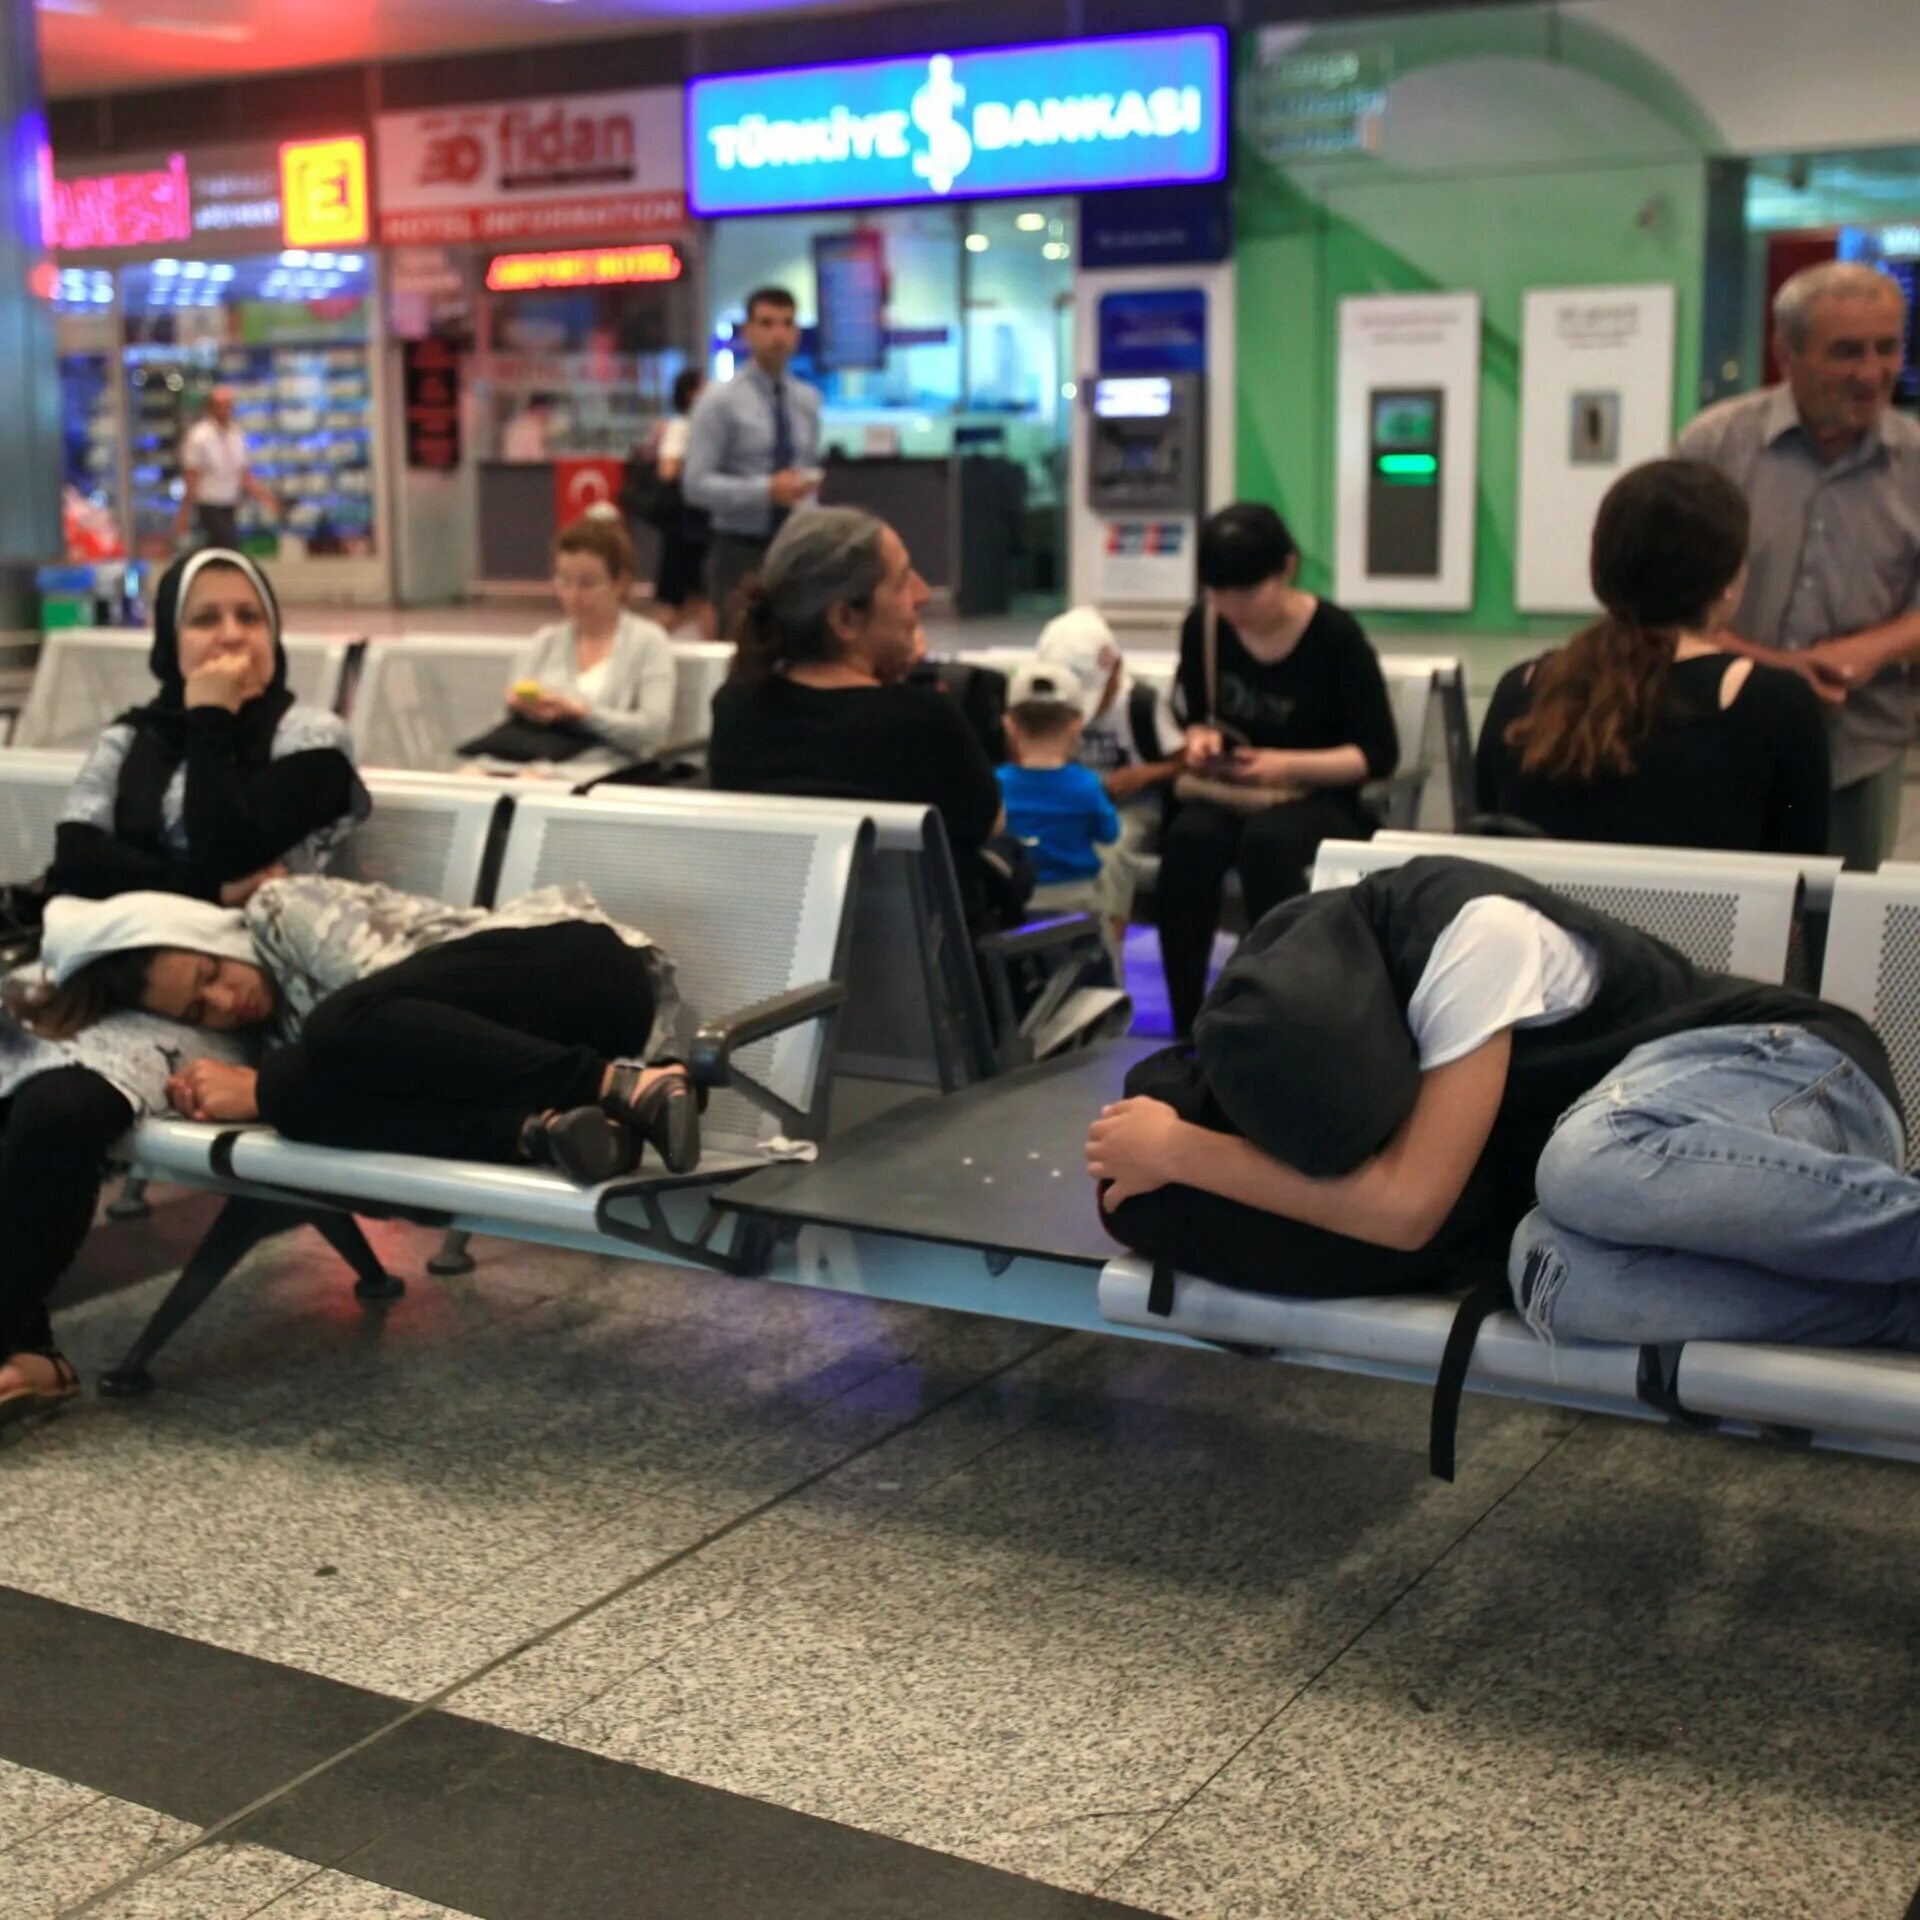 Ситуация в стамбульском аэропорту. Ситуации в аэропорту. Обстановка в аэропорту Стамбула. Ожидание в аэропорту в Стамбуле бизнес. Поспать в шереметьево